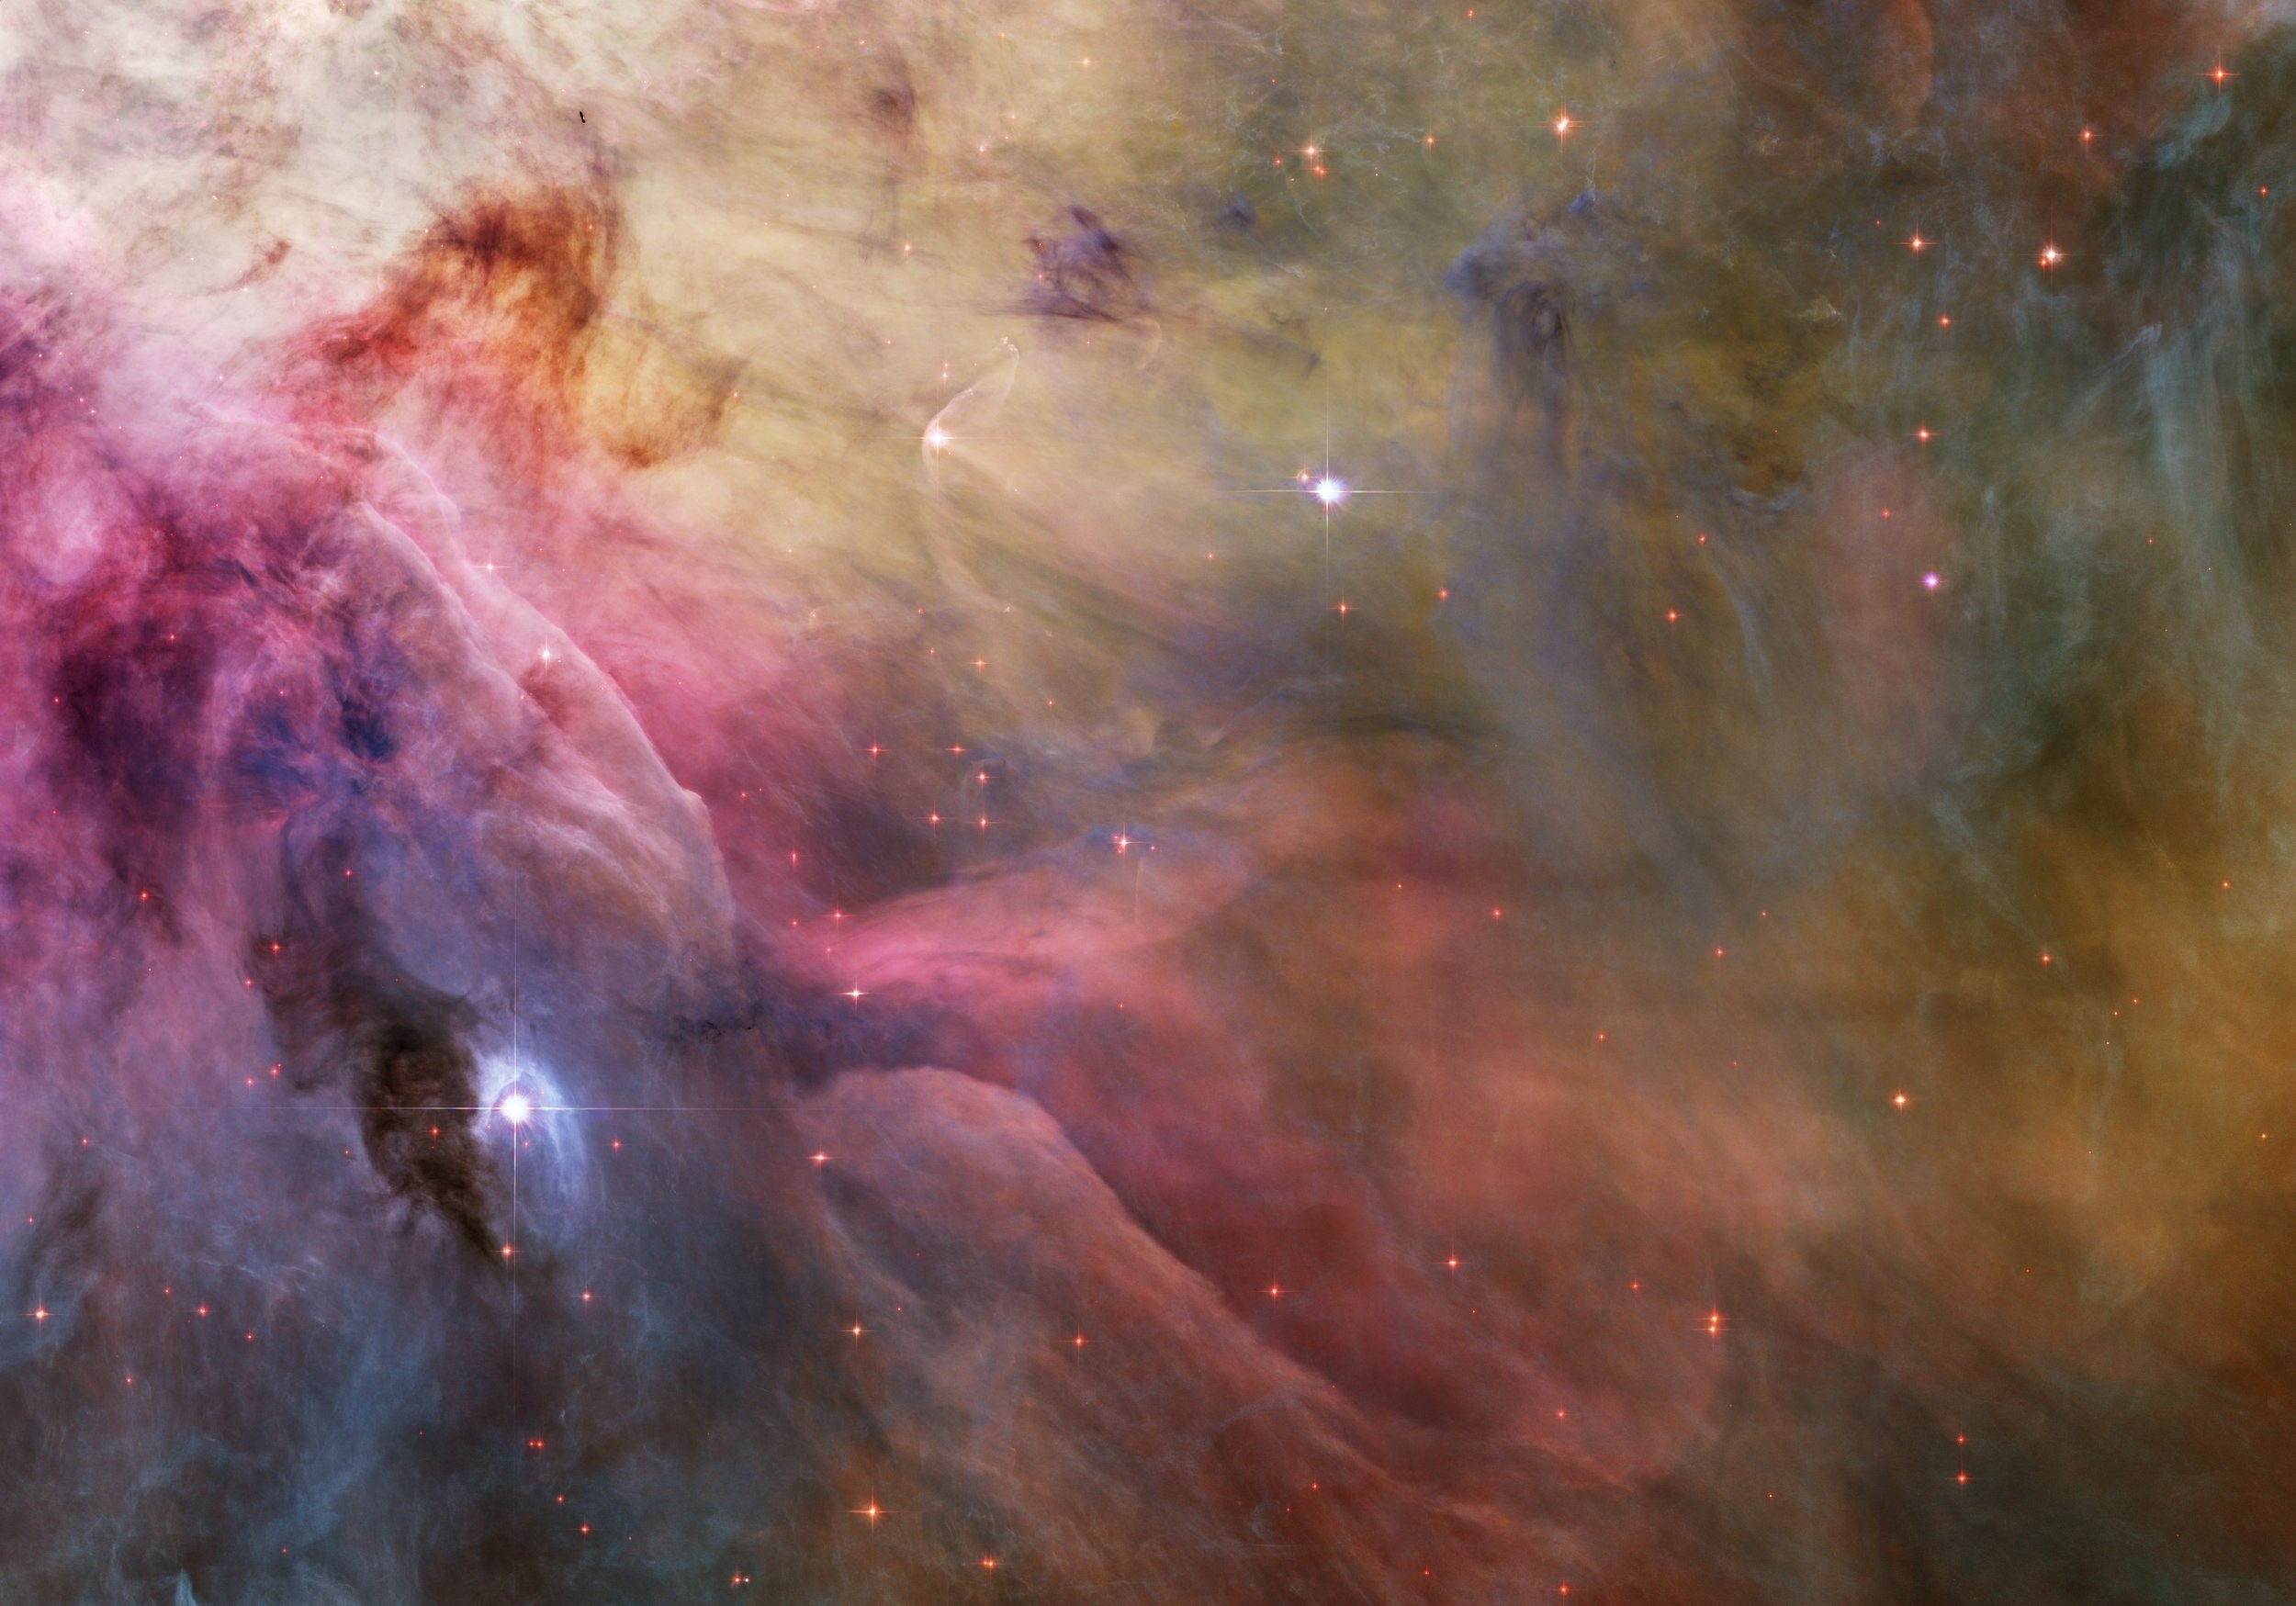 Emission Nebula, Orion Nebula, no people, full frame